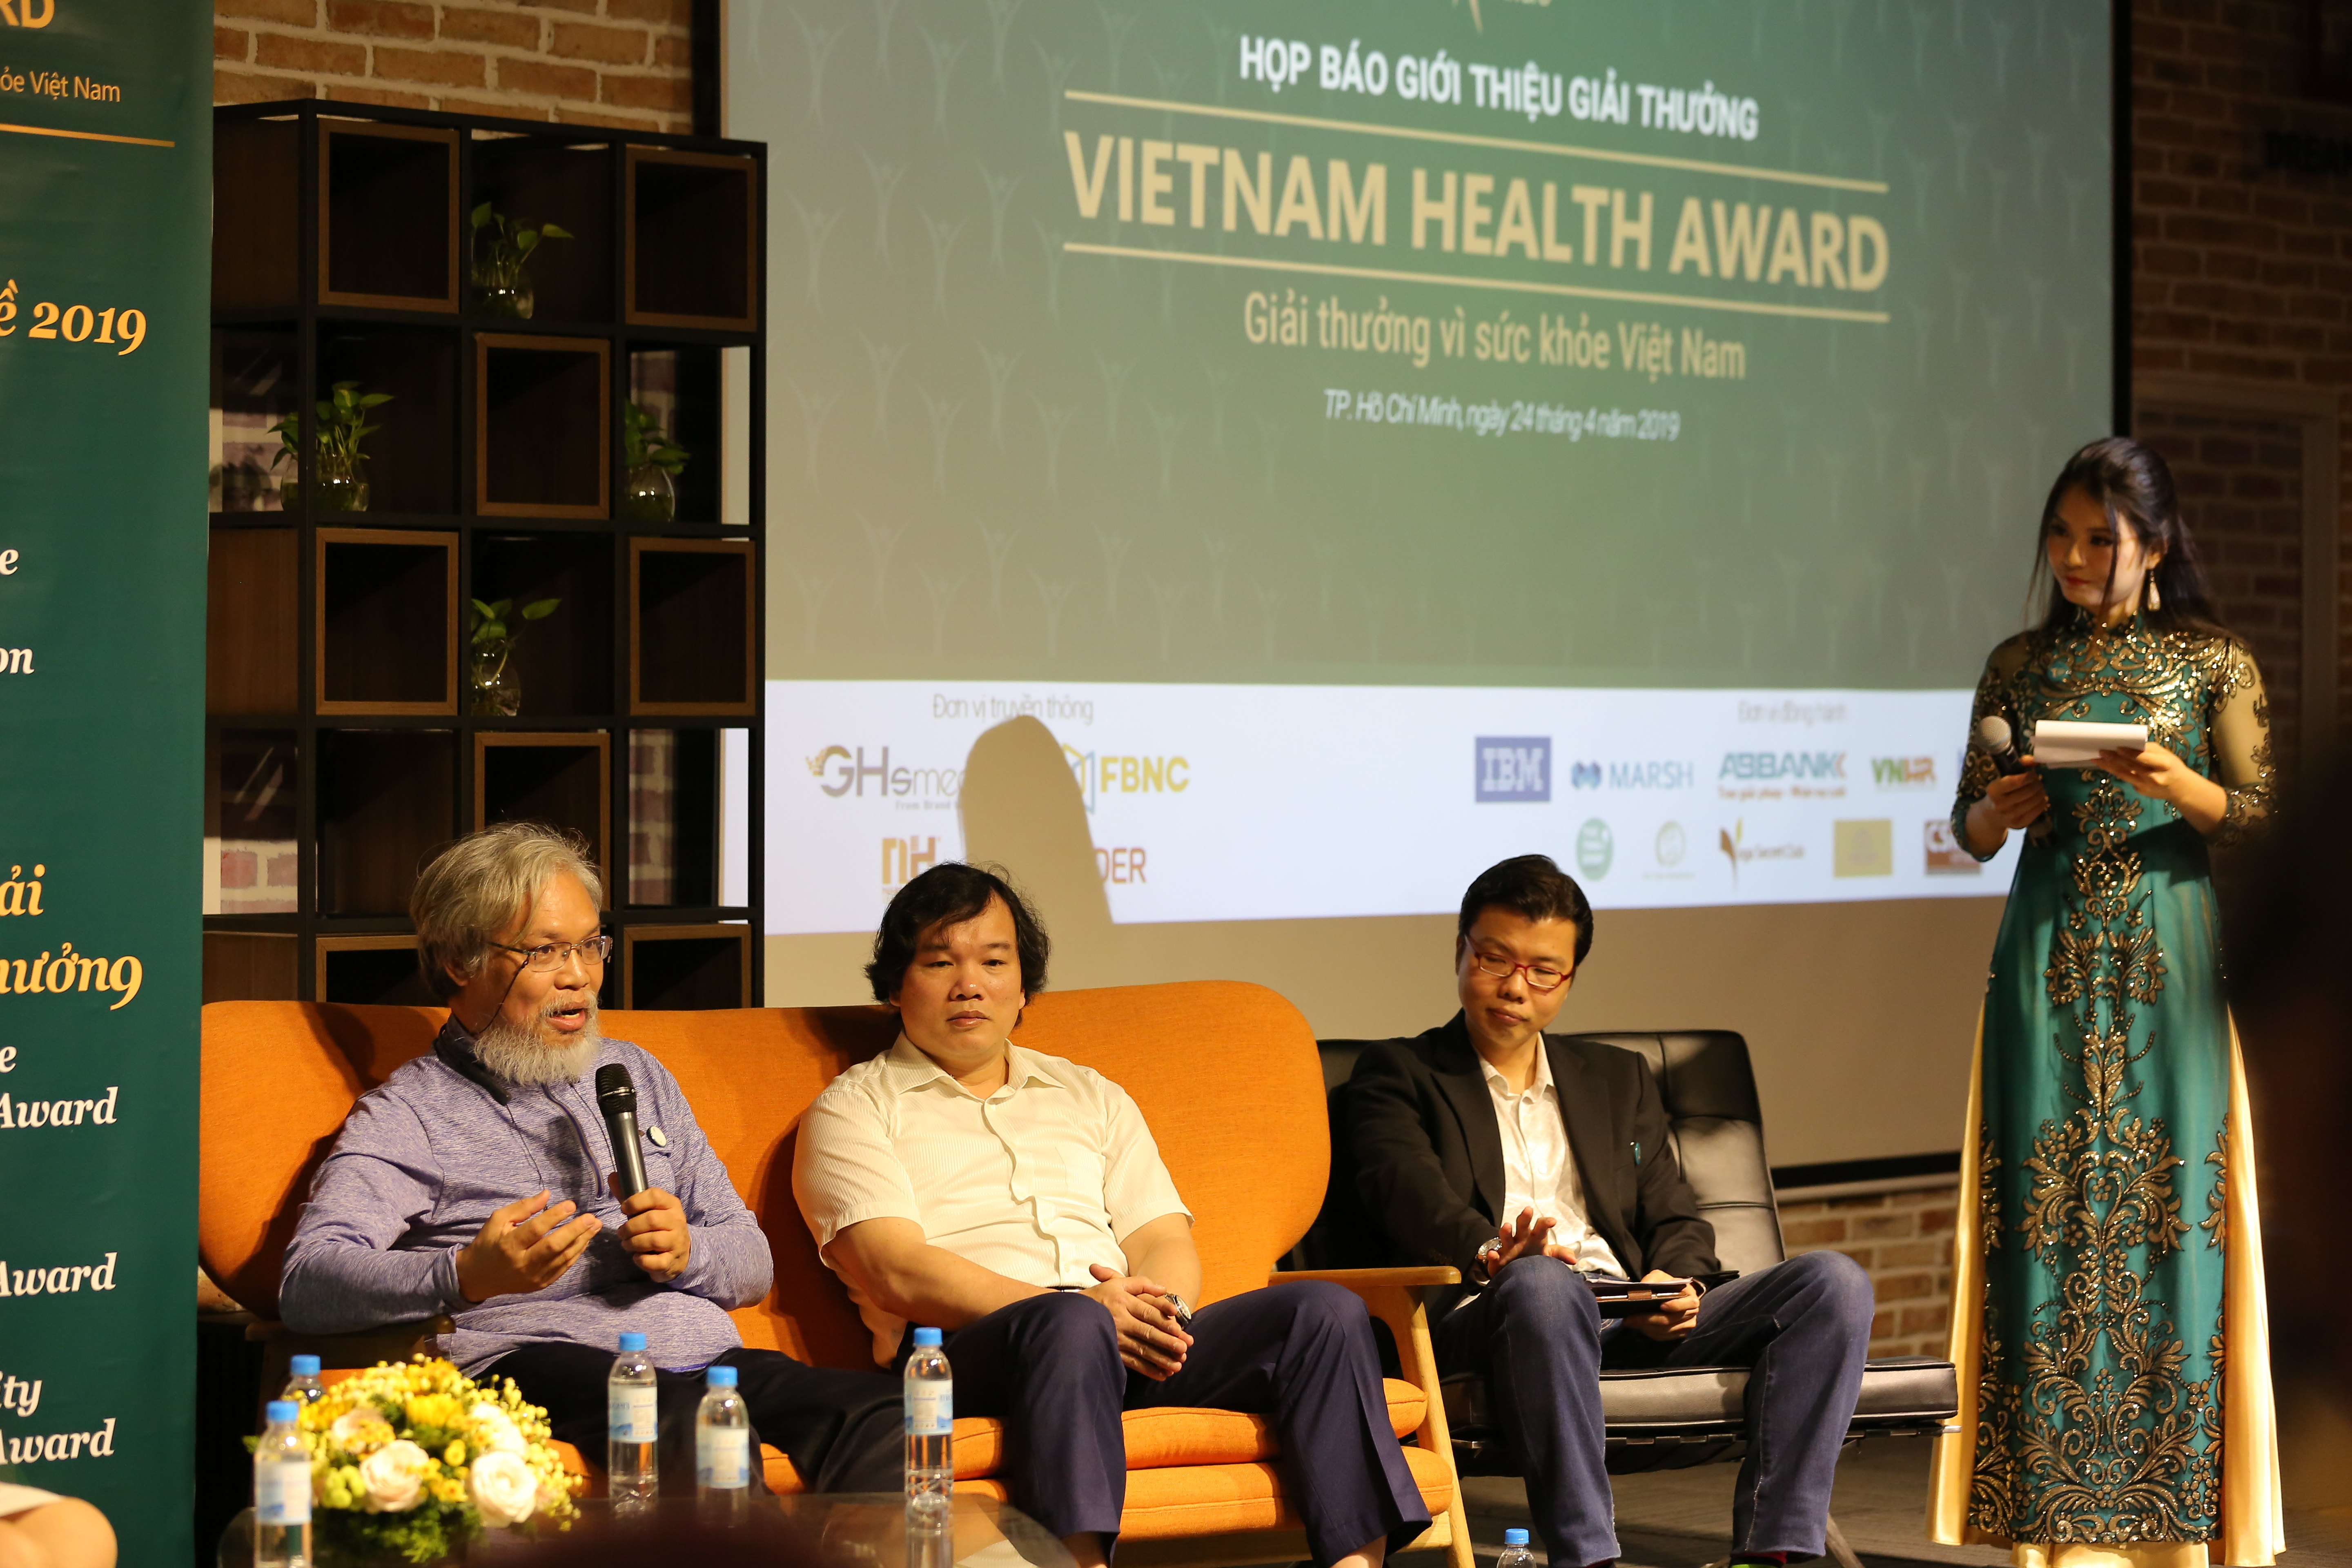 “Vietnam Health Award” - Giải thưởng đầu tiên tại Việt Nam vinh danh ngành sức khỏe cộng đồng